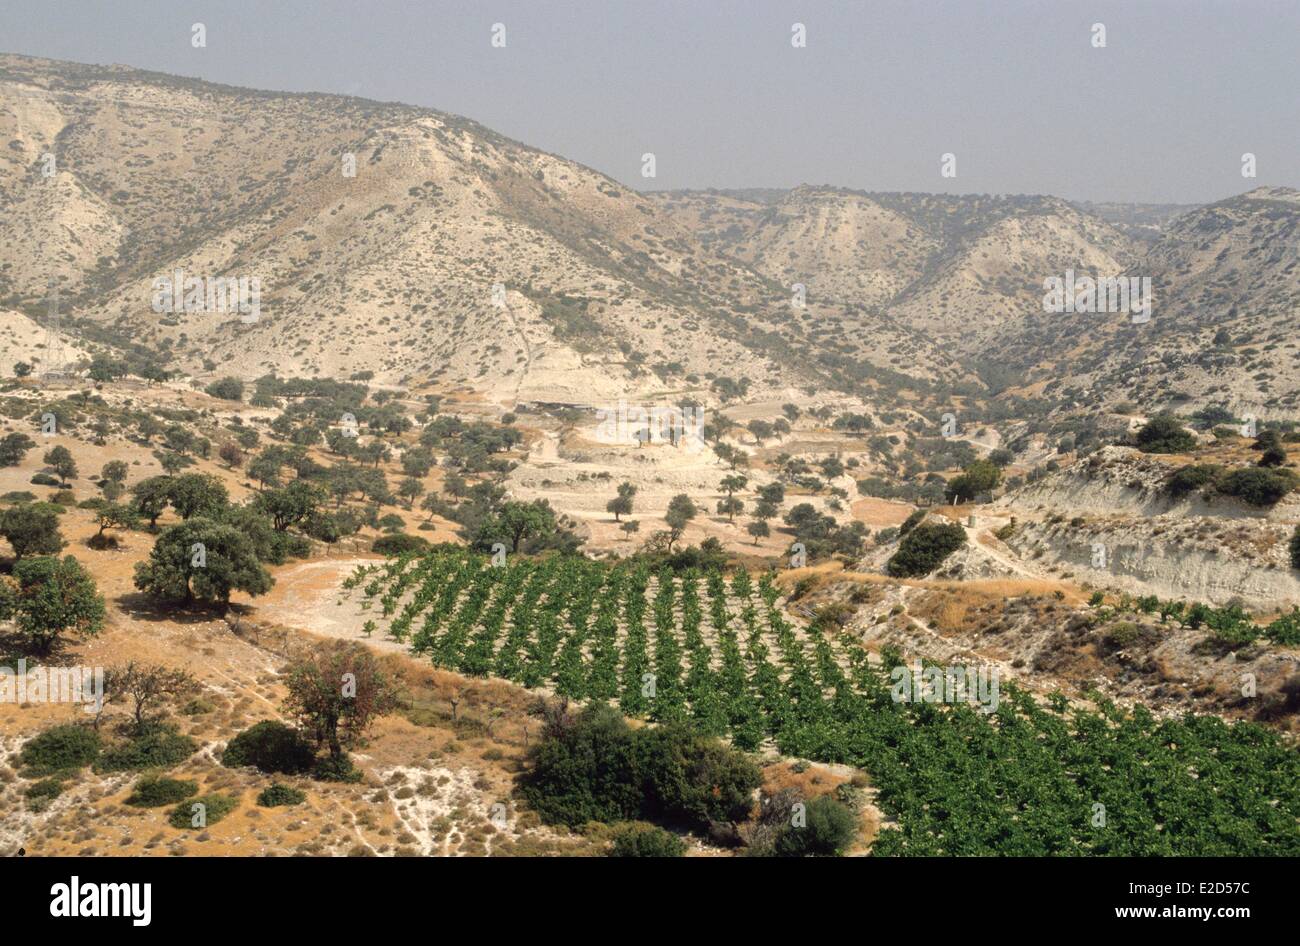 Cyprus Pissouri vineyard Stock Photo